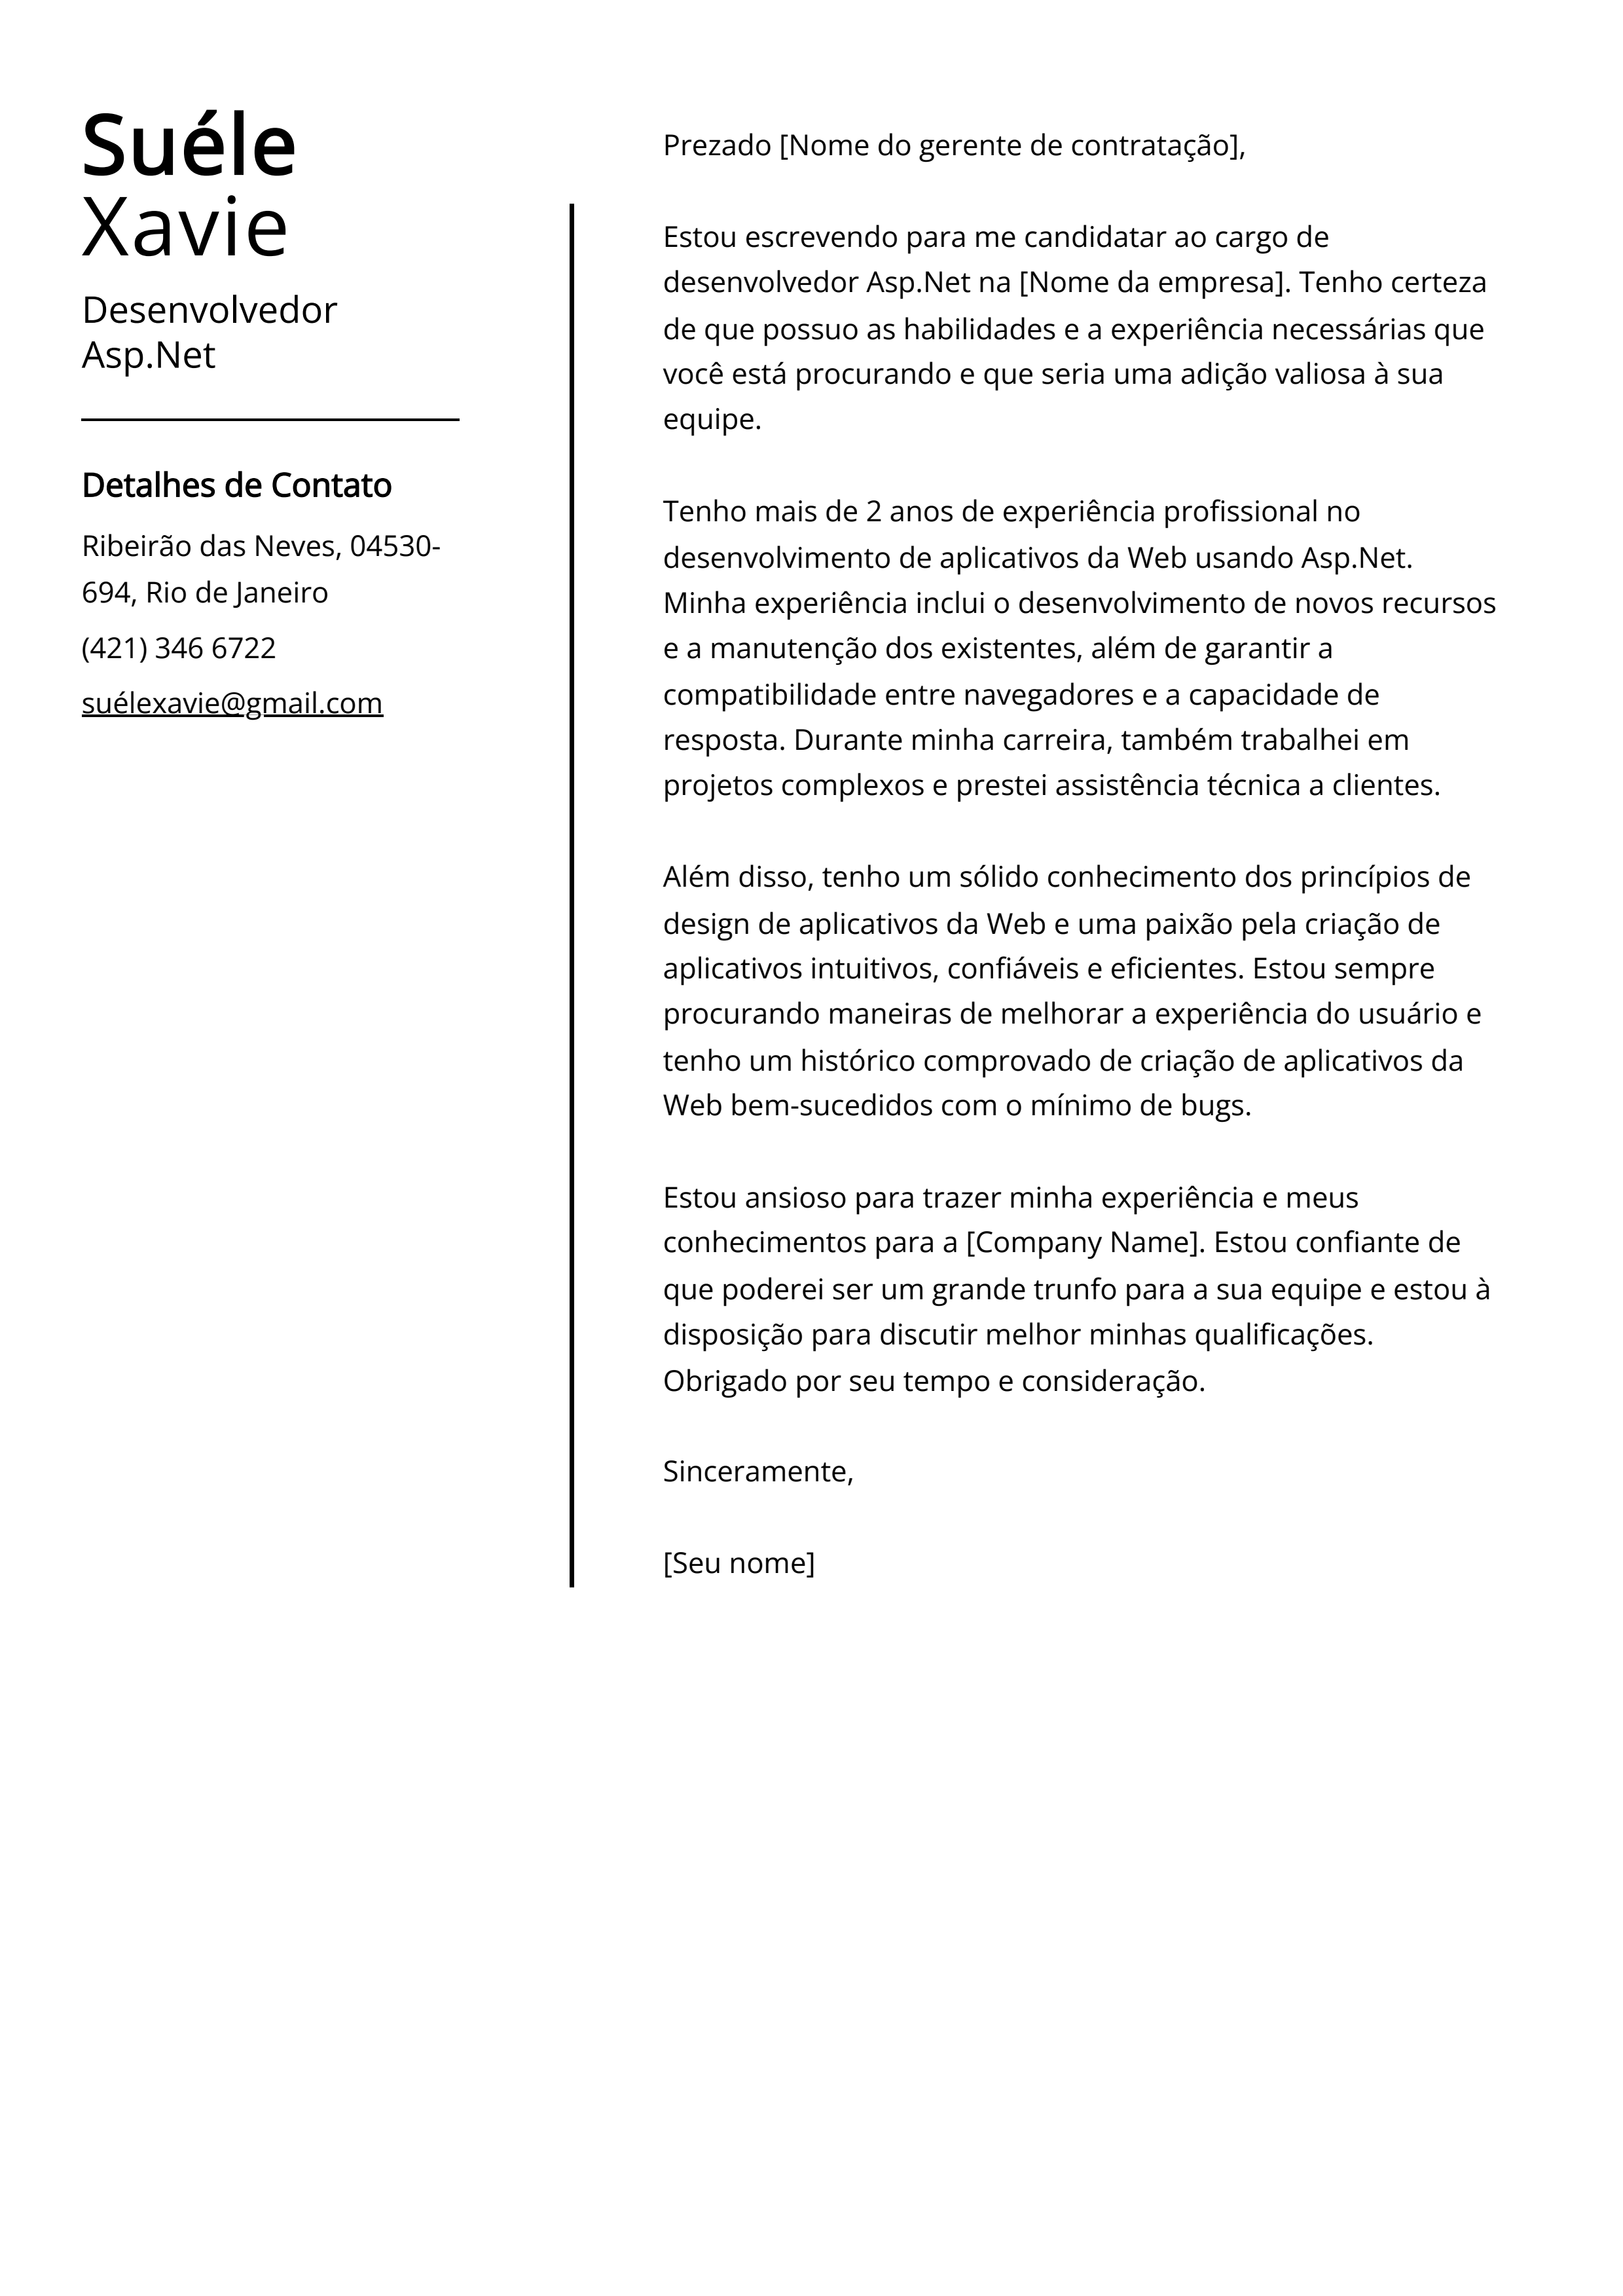 Exemplo de carta de apresentação do Desenvolvedor Asp.Net